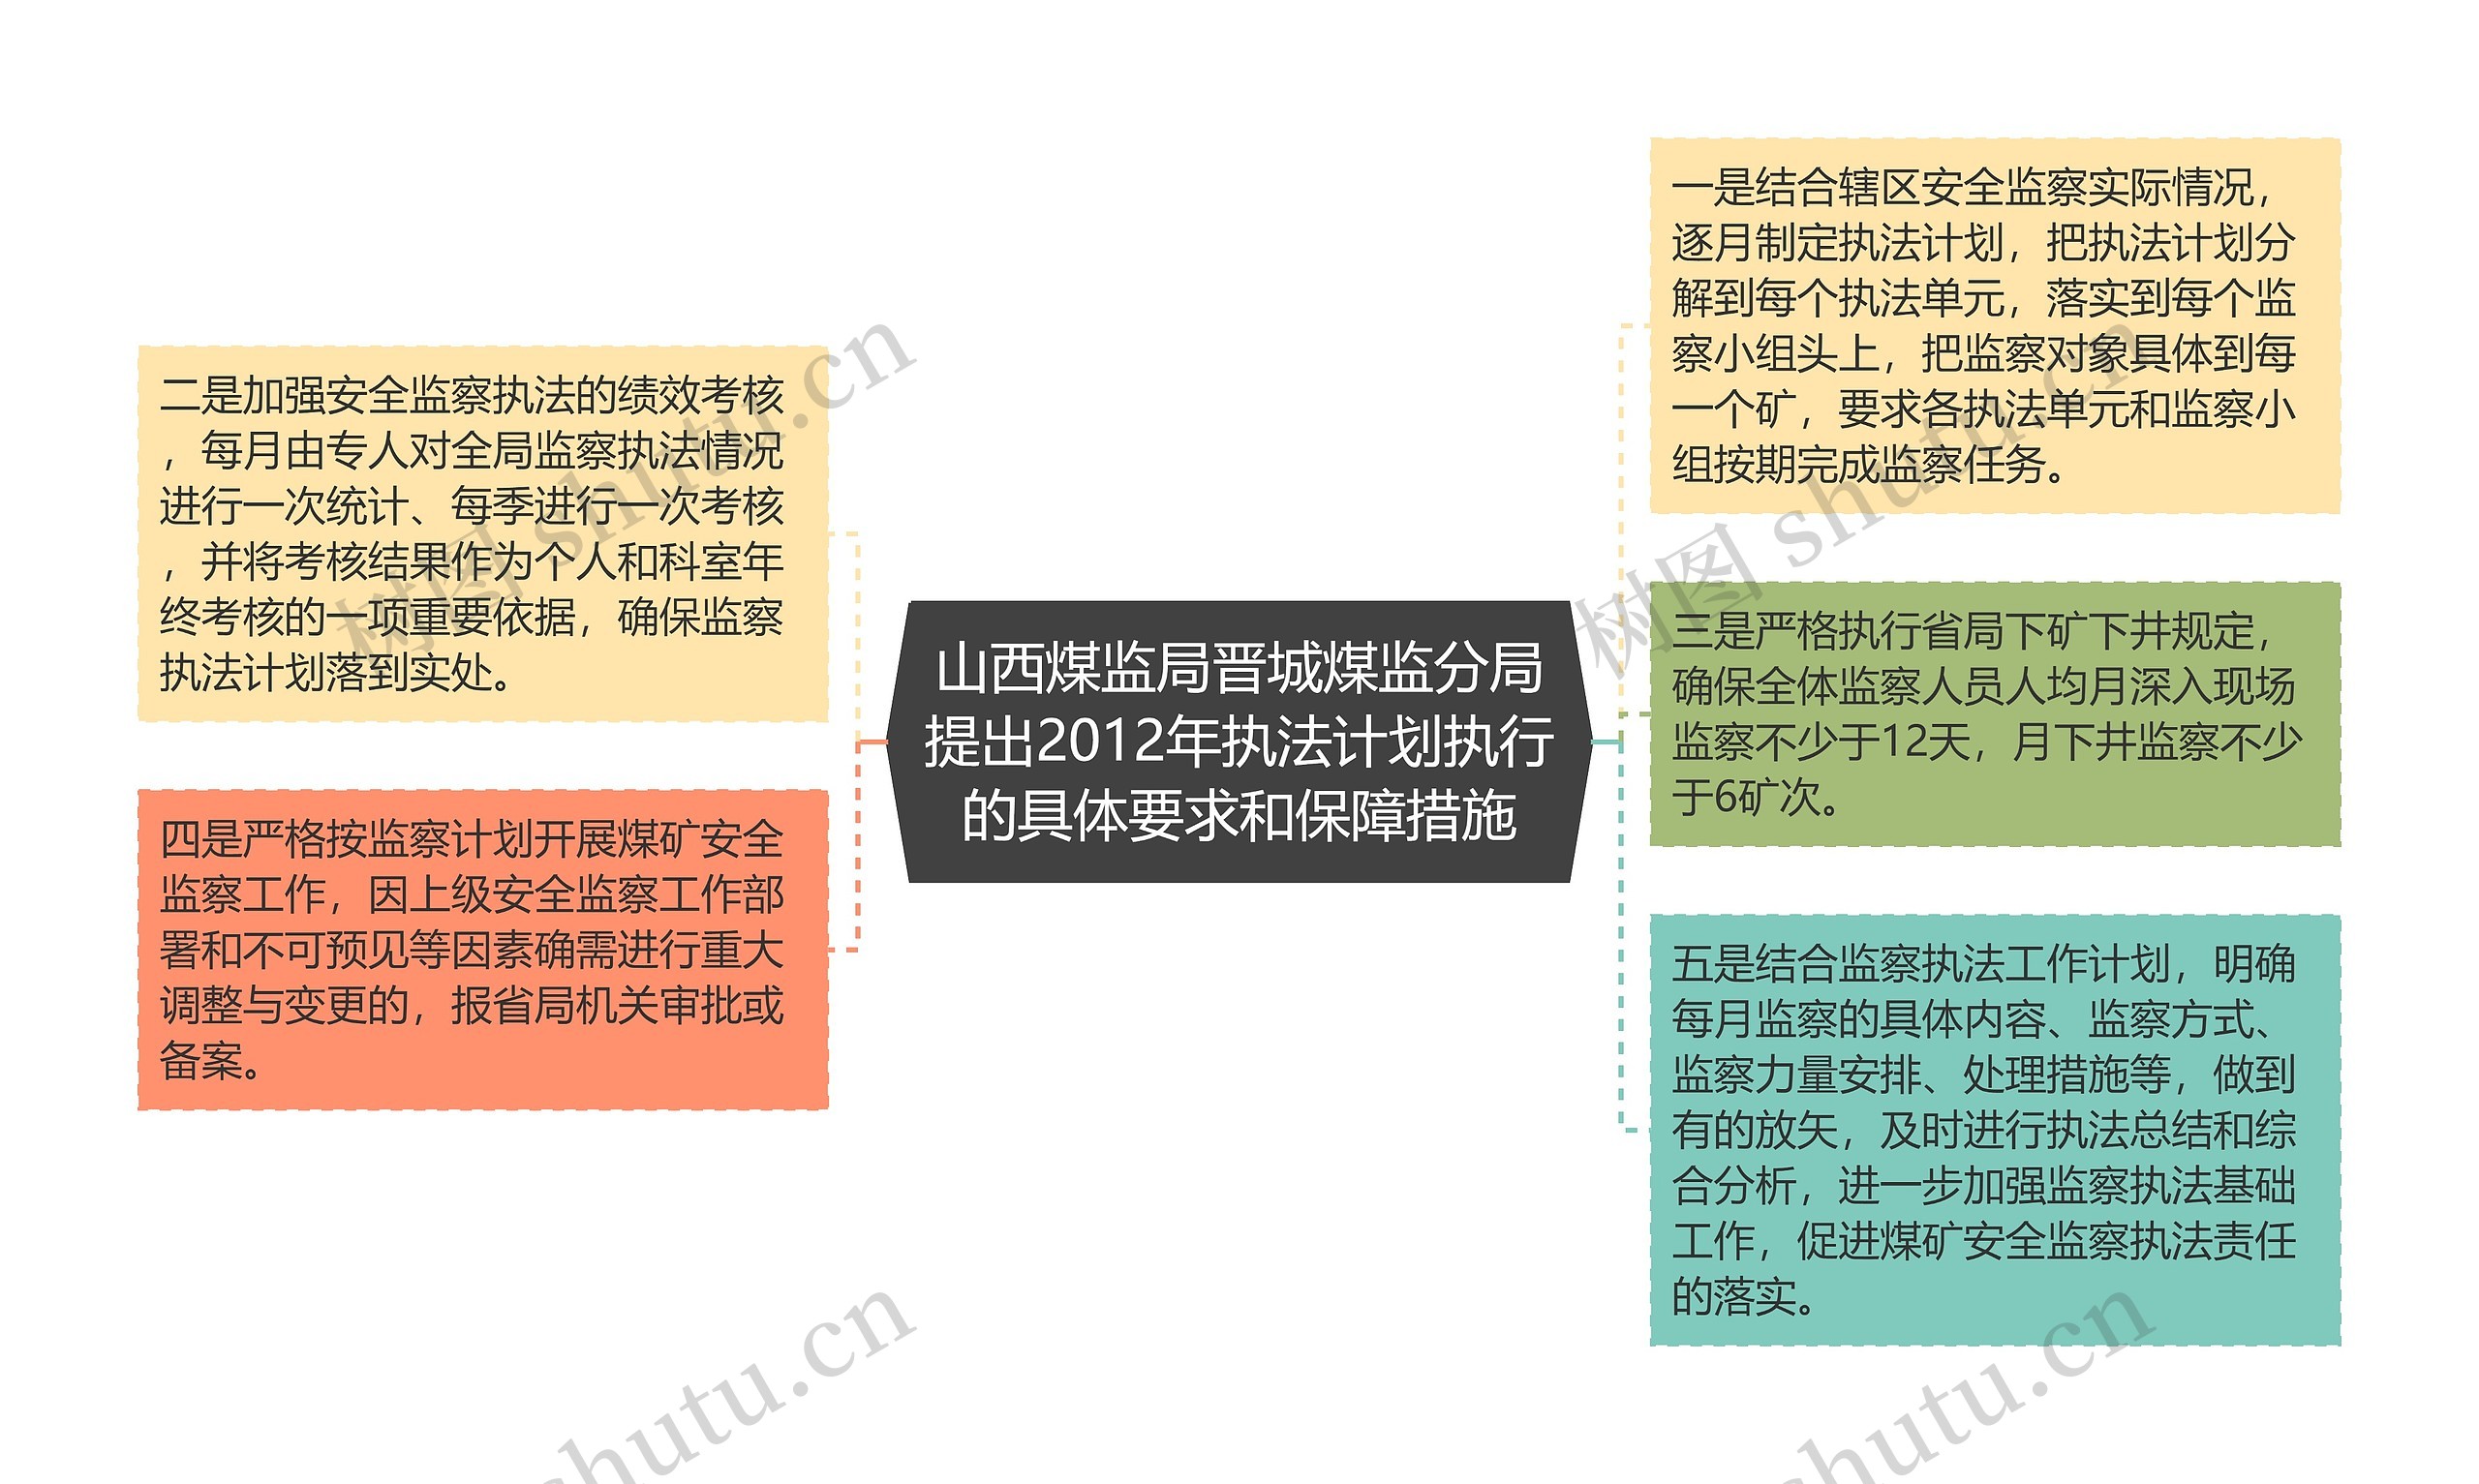 山西煤监局晋城煤监分局提出2012年执法计划执行的具体要求和保障措施思维导图